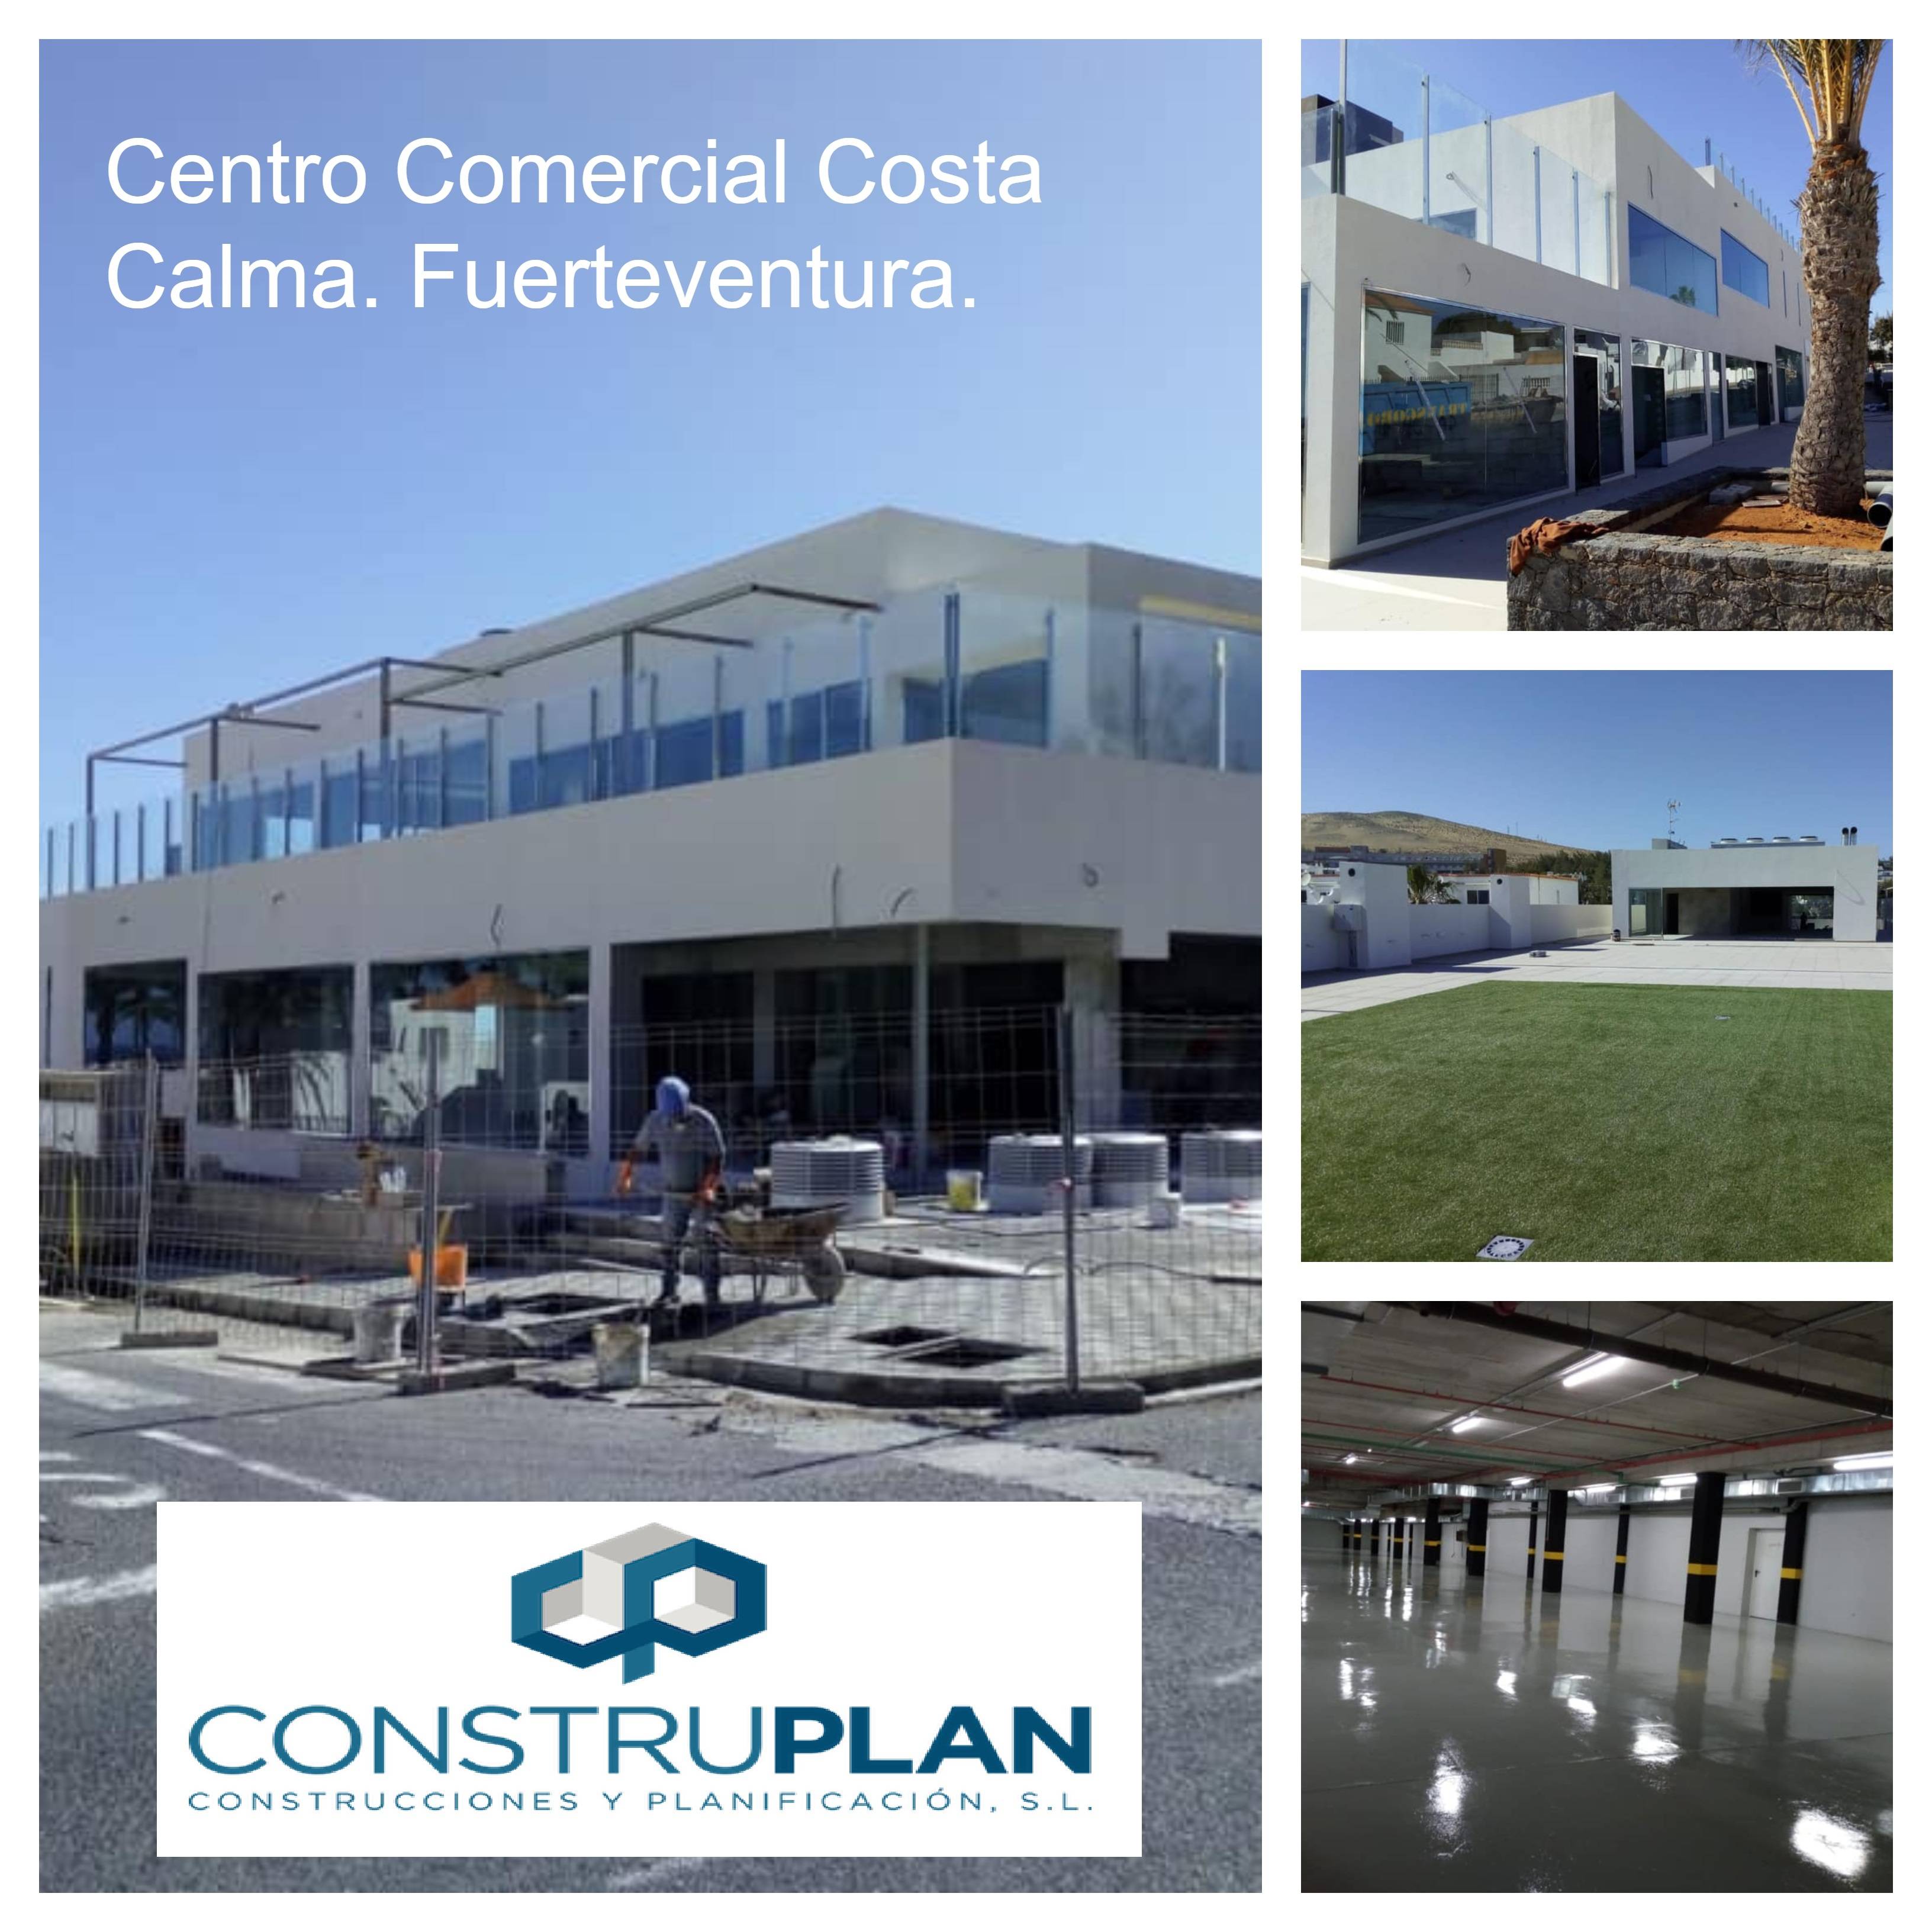 Centro Comercial Costa Calma - Fuerteventura.